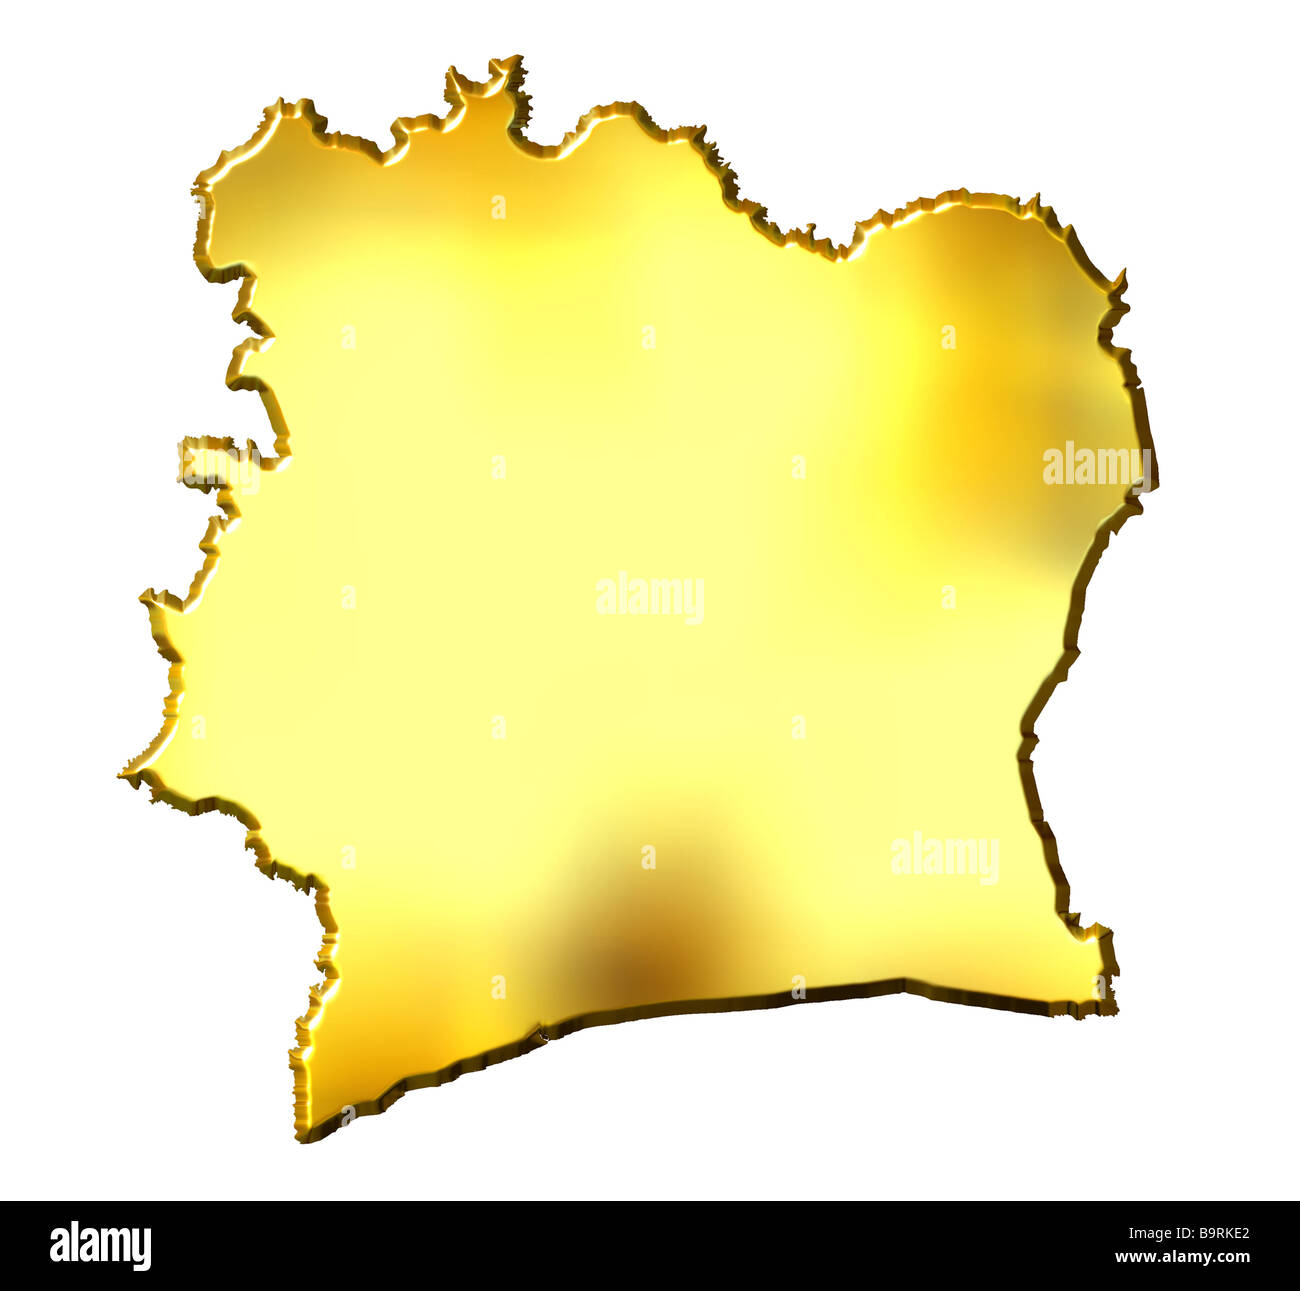 La Costa d Avorio 3d golden mappa isolato in bianco Foto Stock